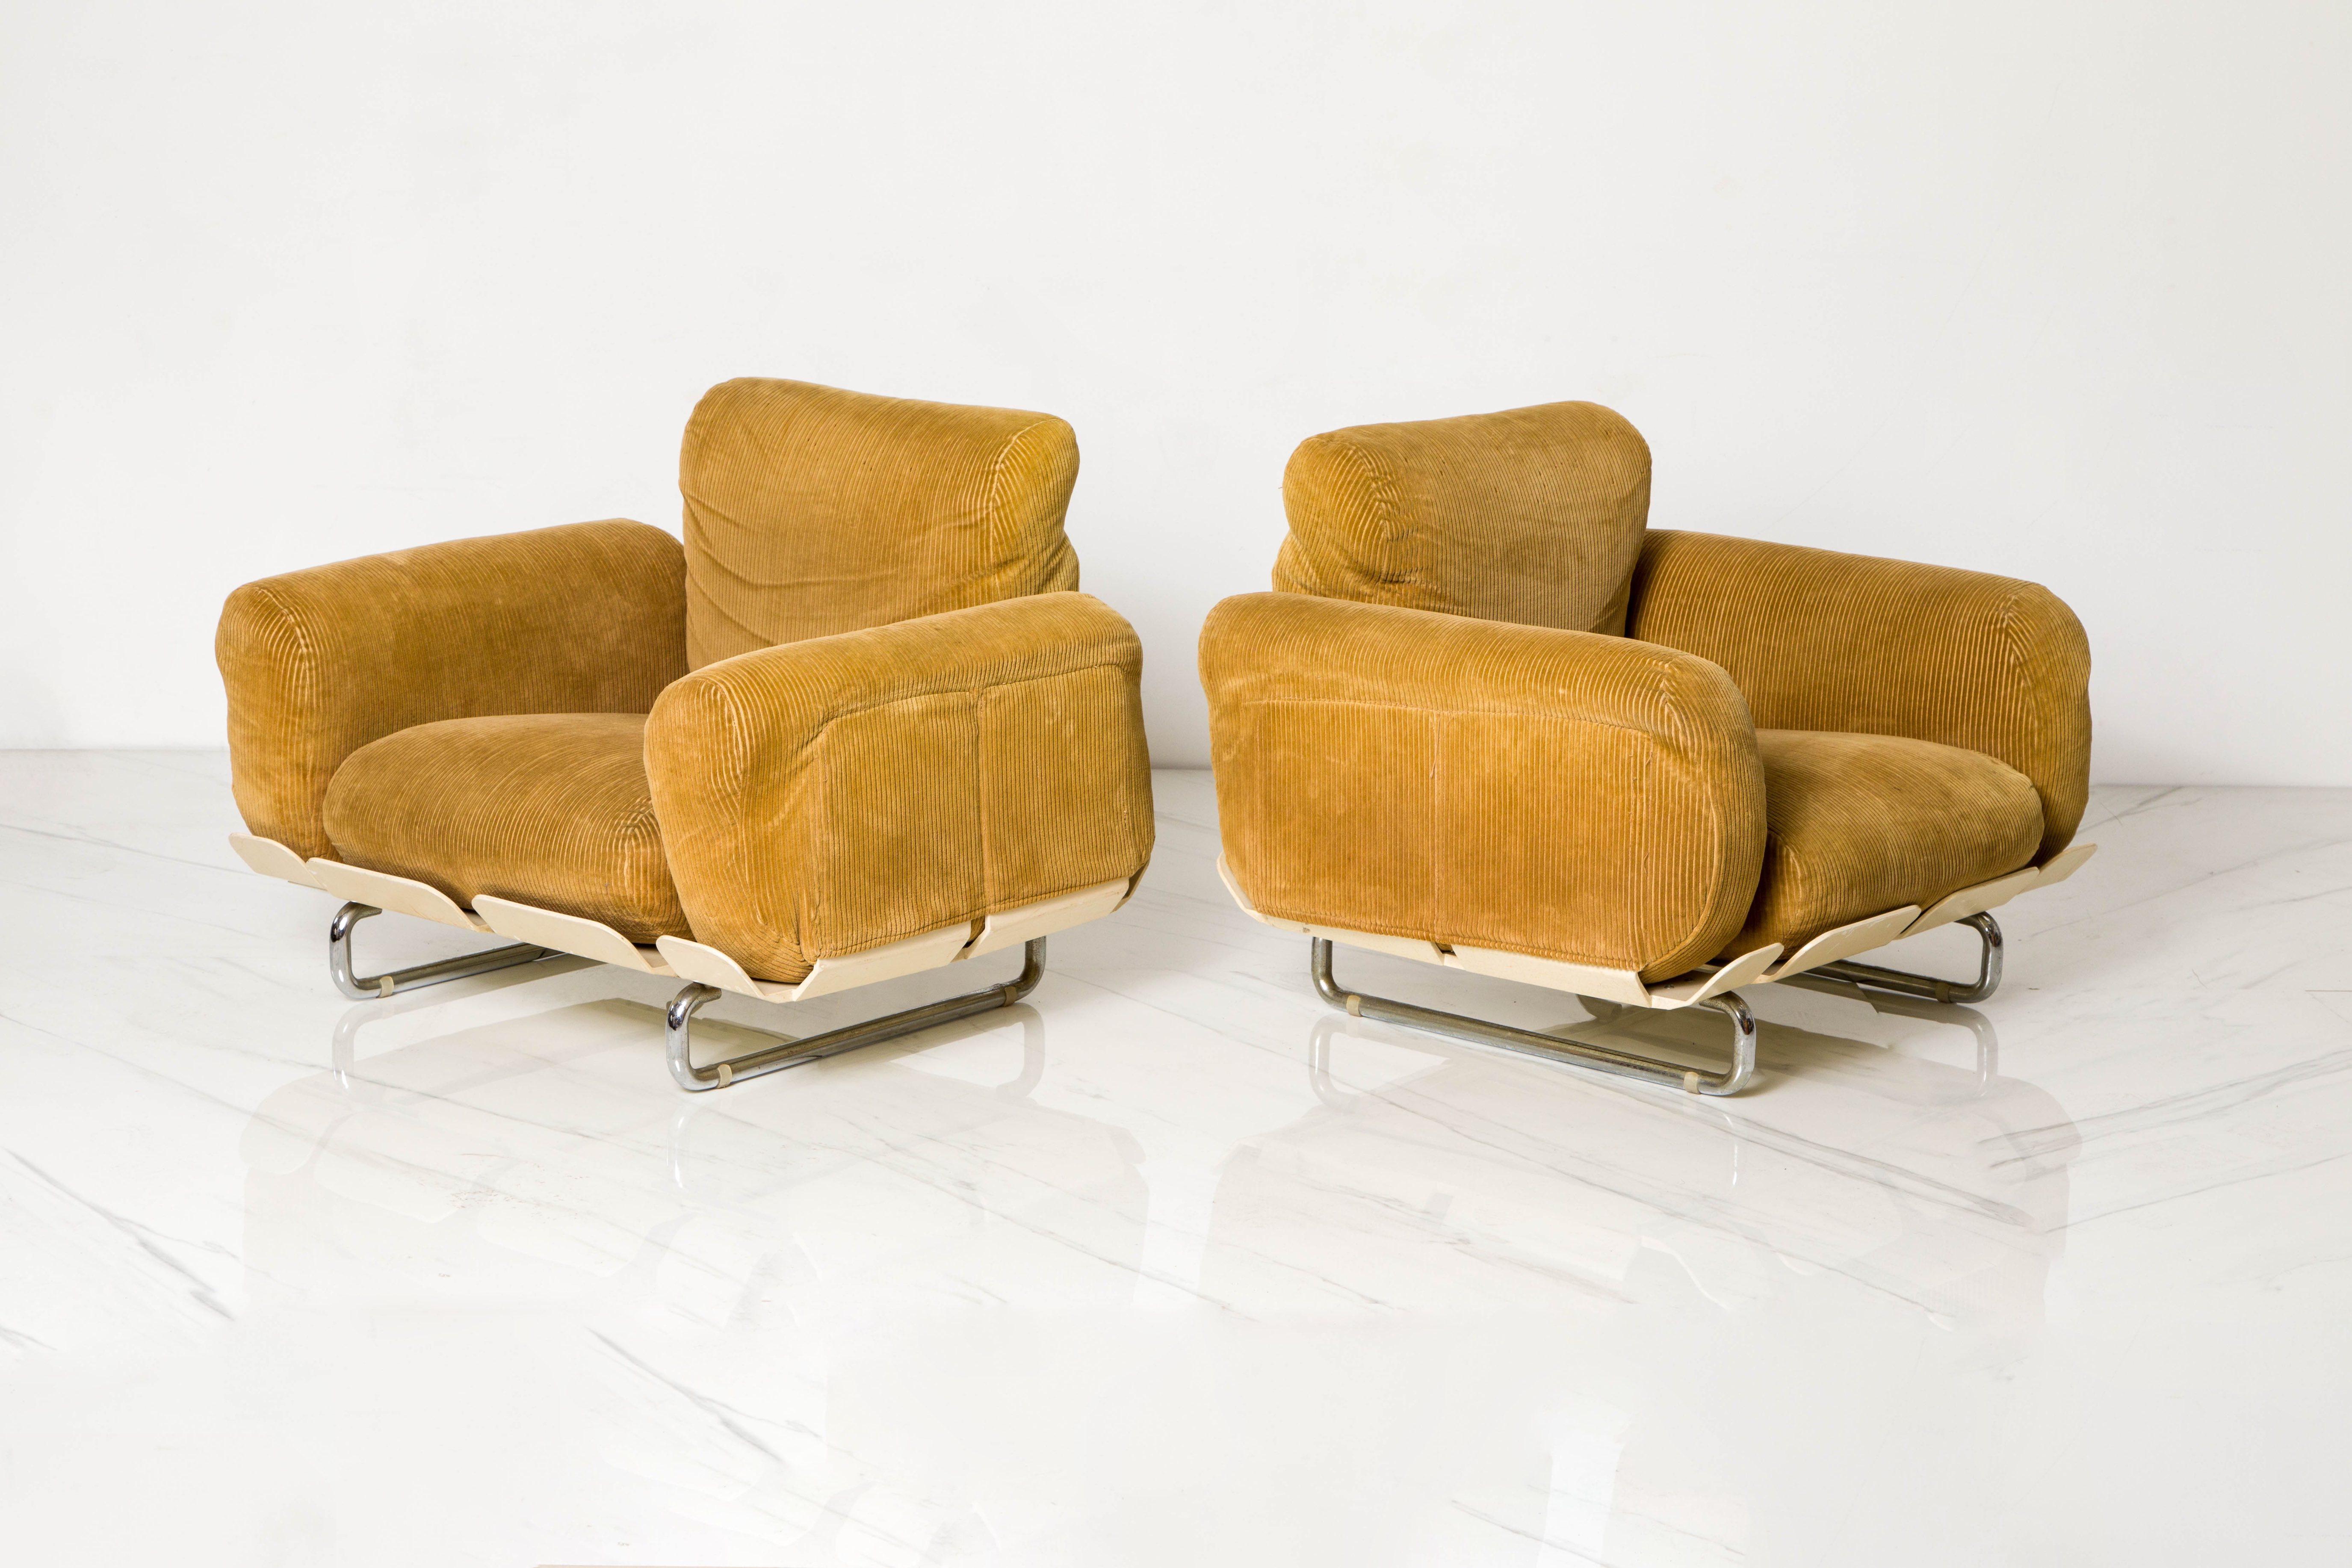 Italian Rare 'Senzafine' Lounge Chairs by Eleonore Riva for Zanotta, 1969, Signed